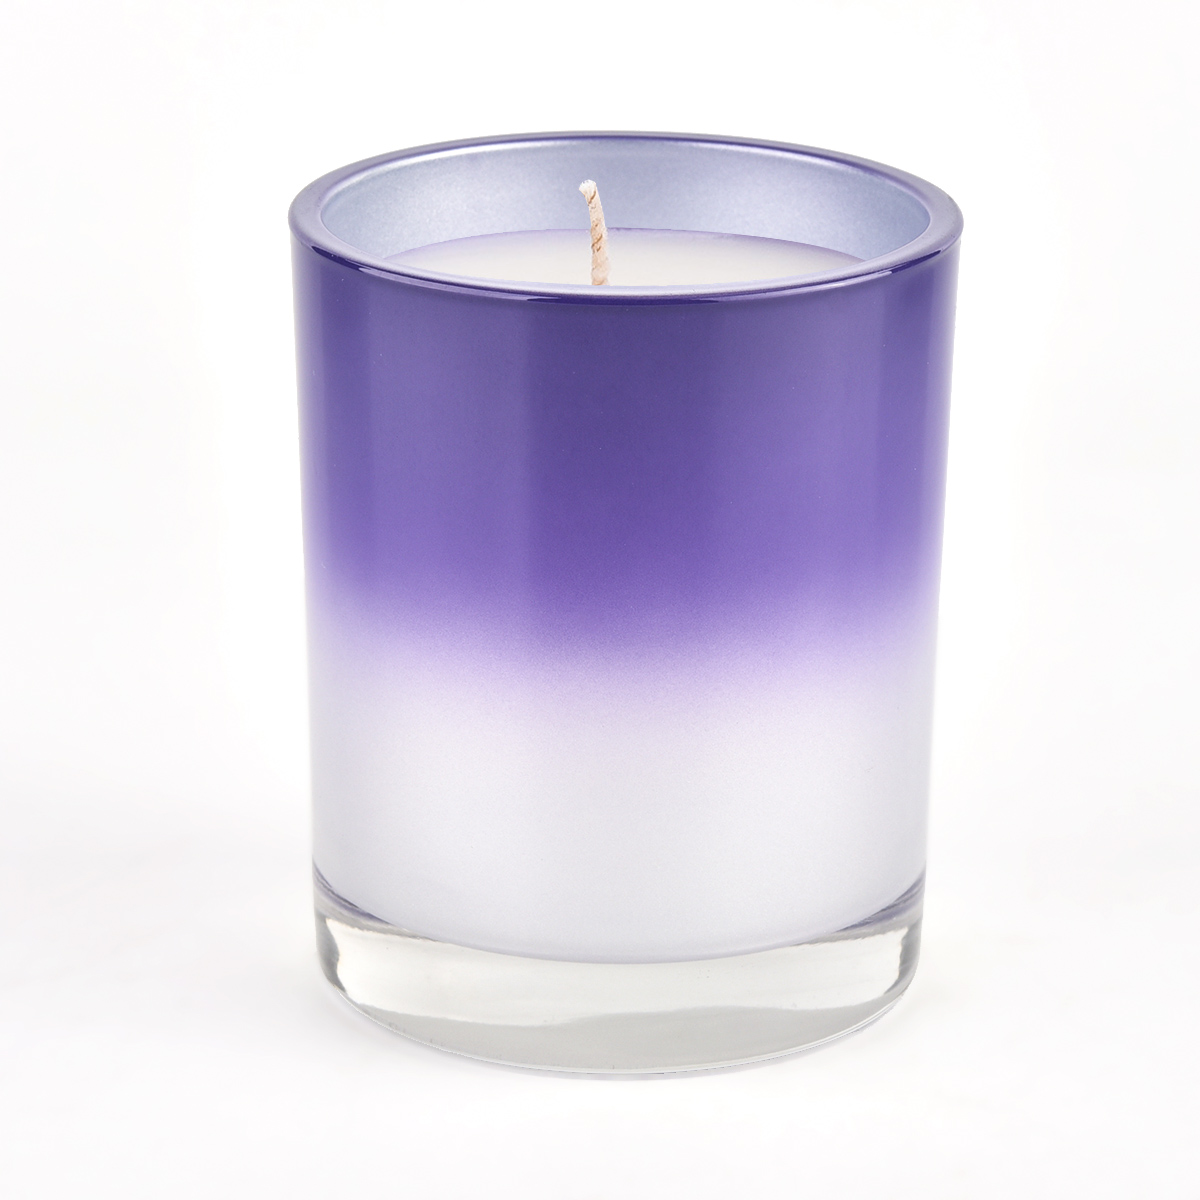 Kerzendose aus glänzendem Glas in neuem Design mit violettem Farbverlauf